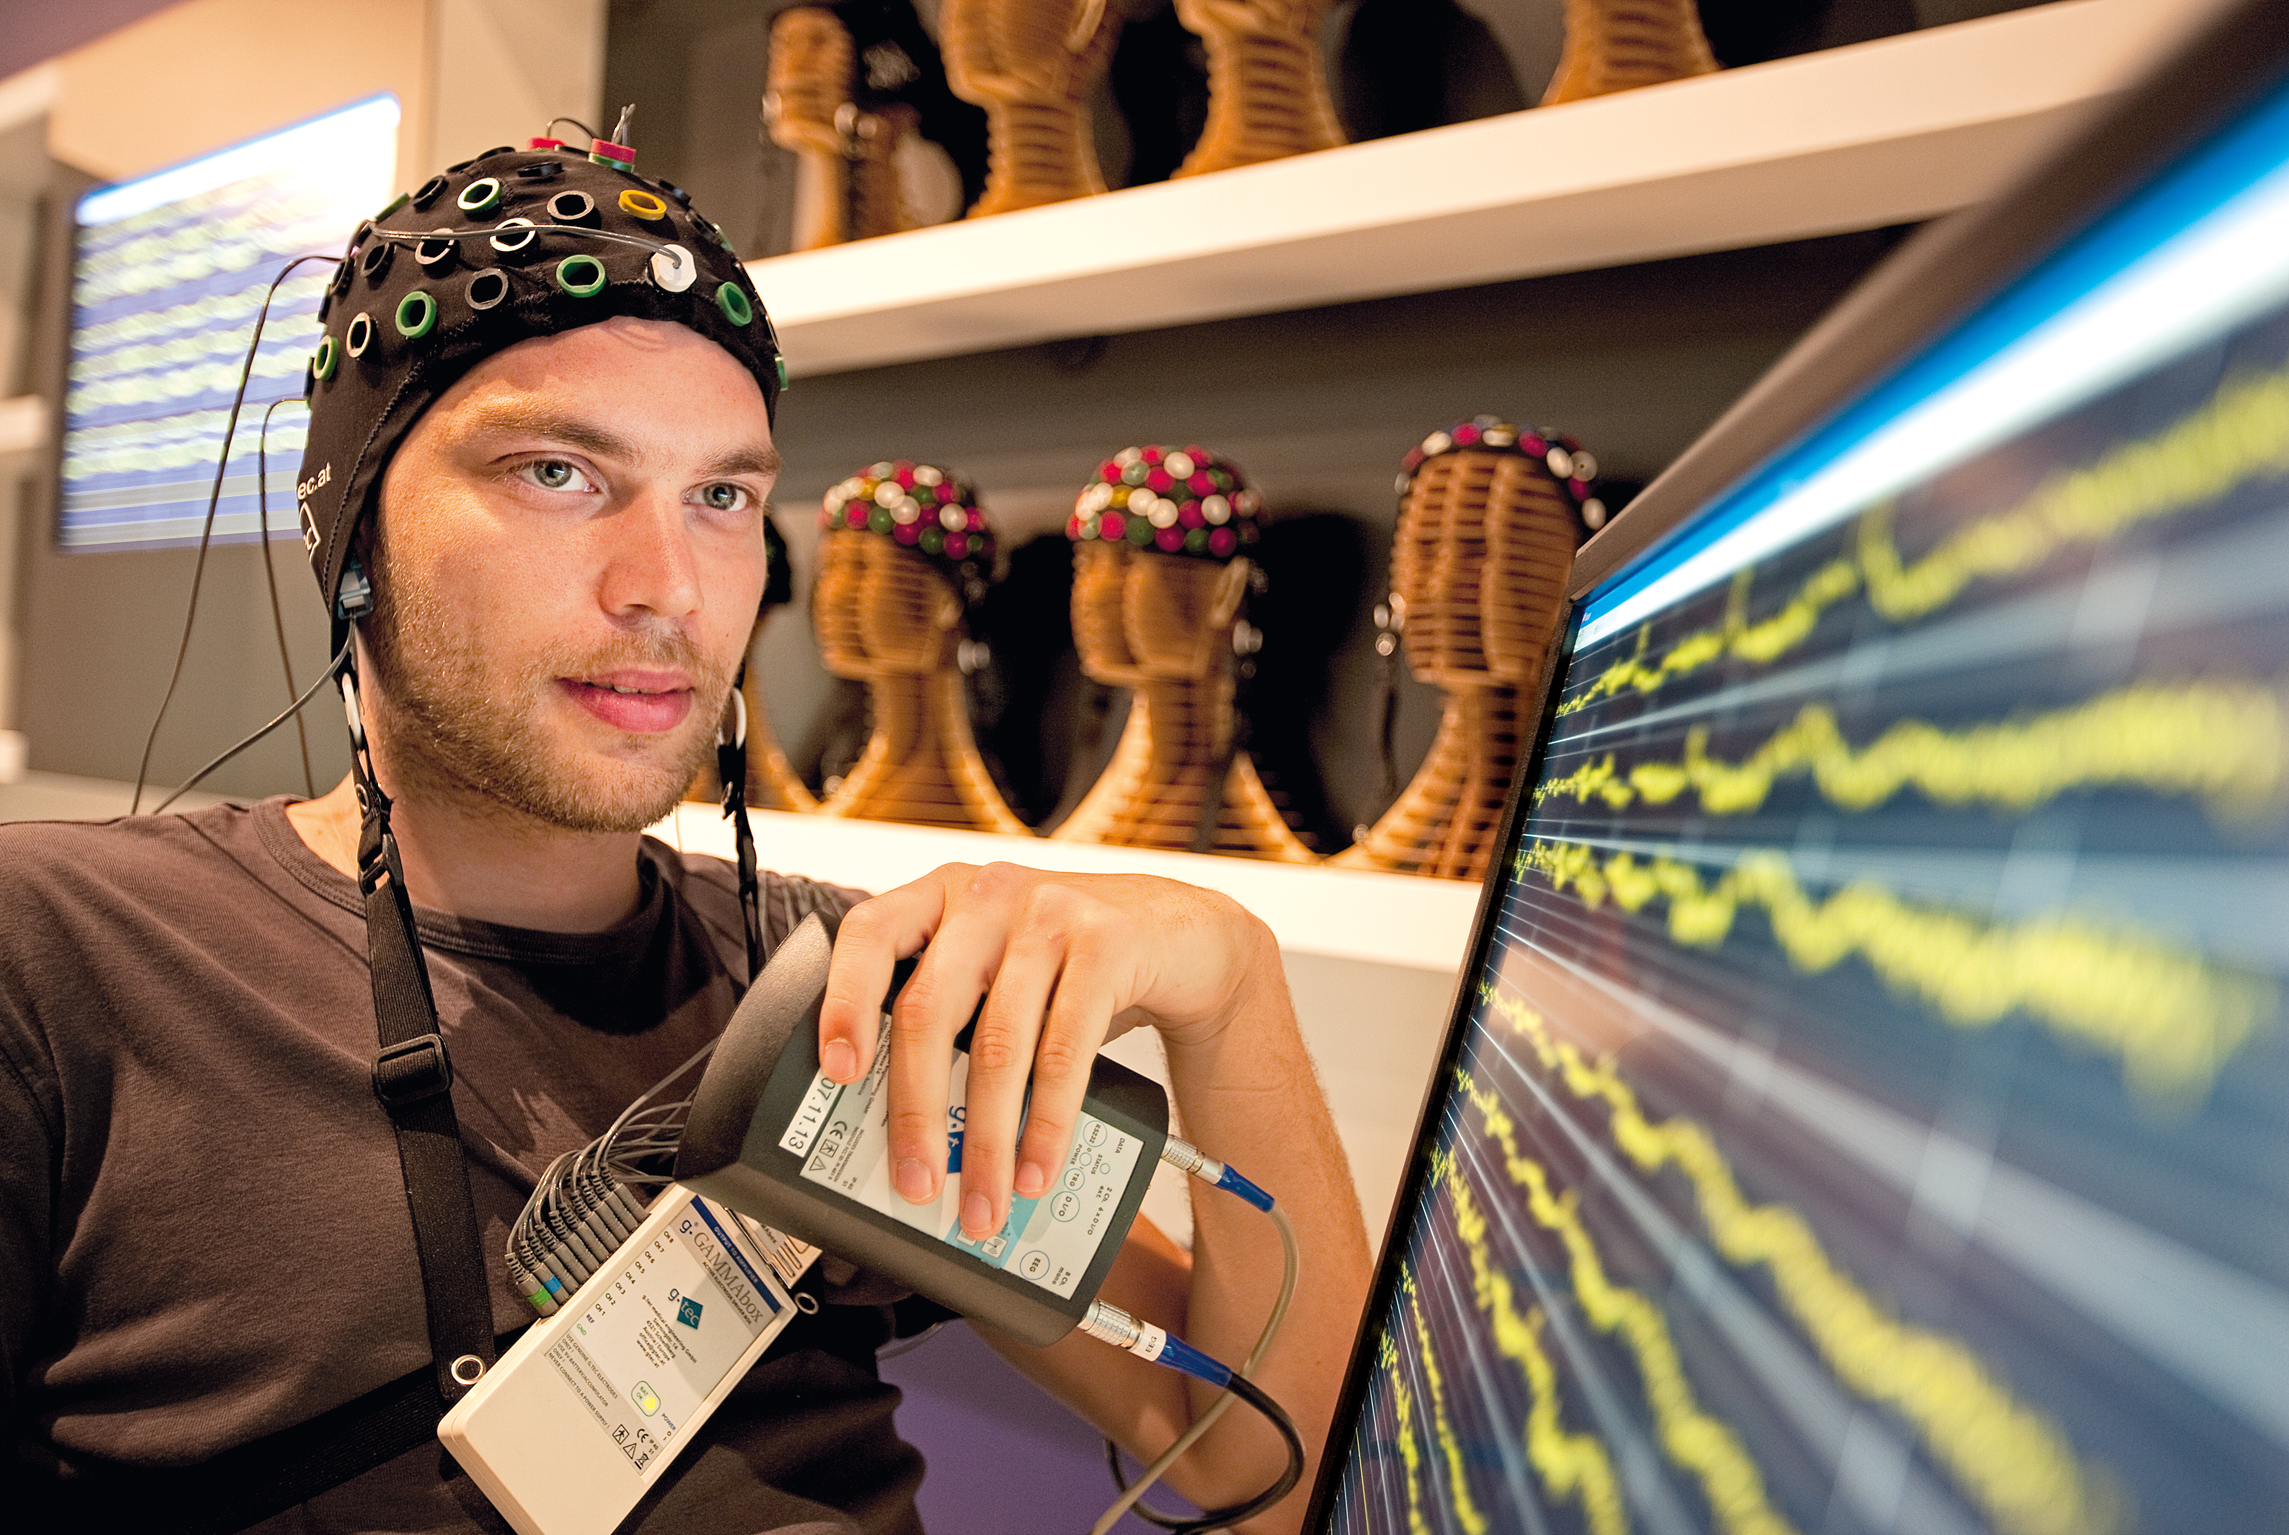 Les électrodes peuvent servir à enregistrer l’activité électrique du cerveau humain. © Ars Electronica, Flickr, CC by-nc-nd 2.0